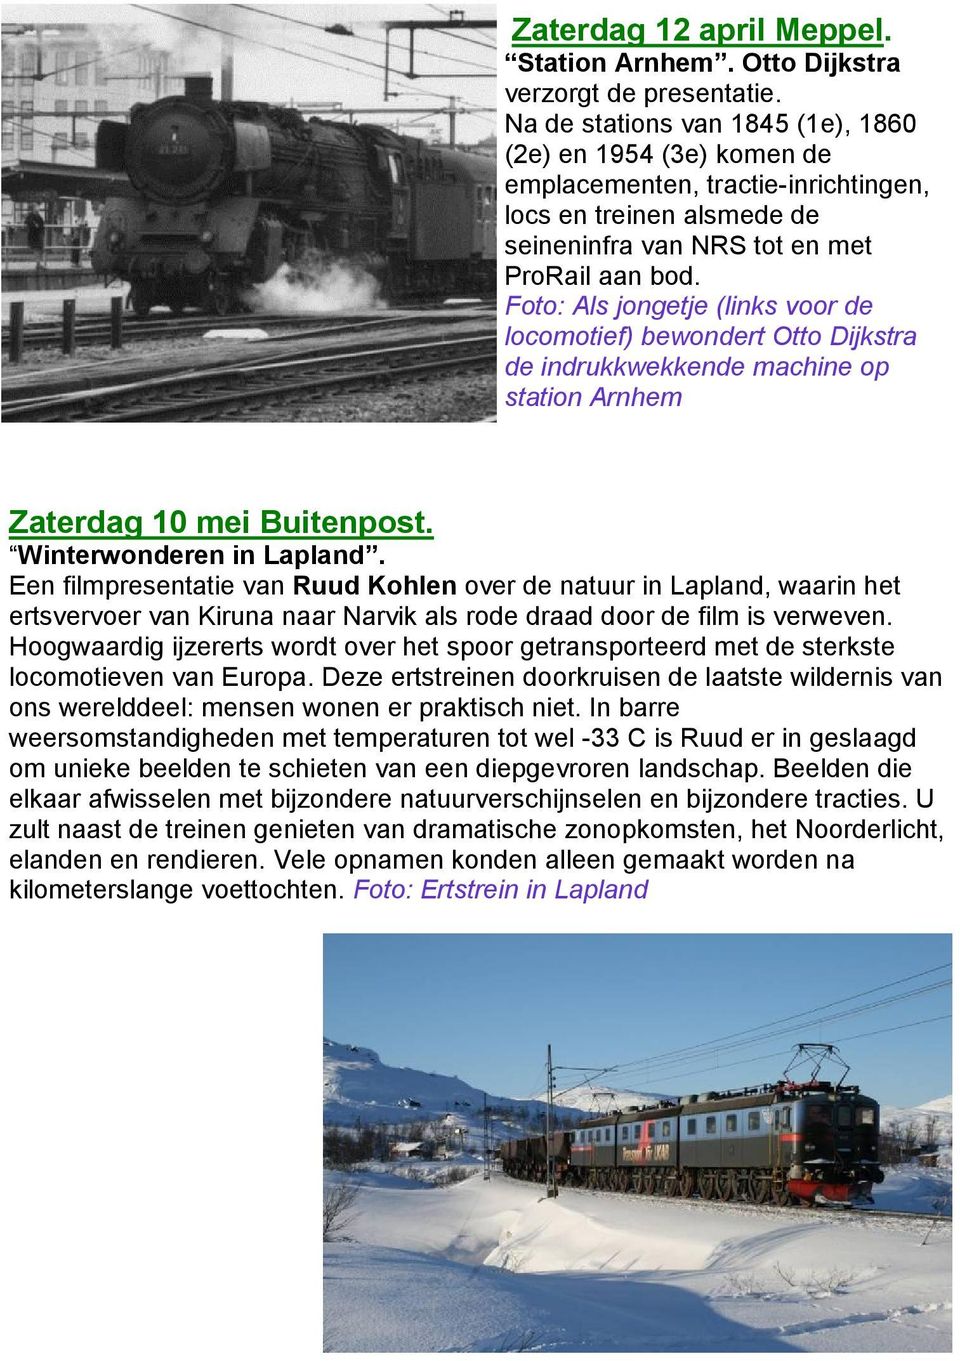 Foto: Als jongetje (links voor de locomotief) bewondert Otto Dijkstra de indrukkwekkende machine op station Arnhem Zaterdag 10 mei Buitenpost. Winterwonderen in Lapland.